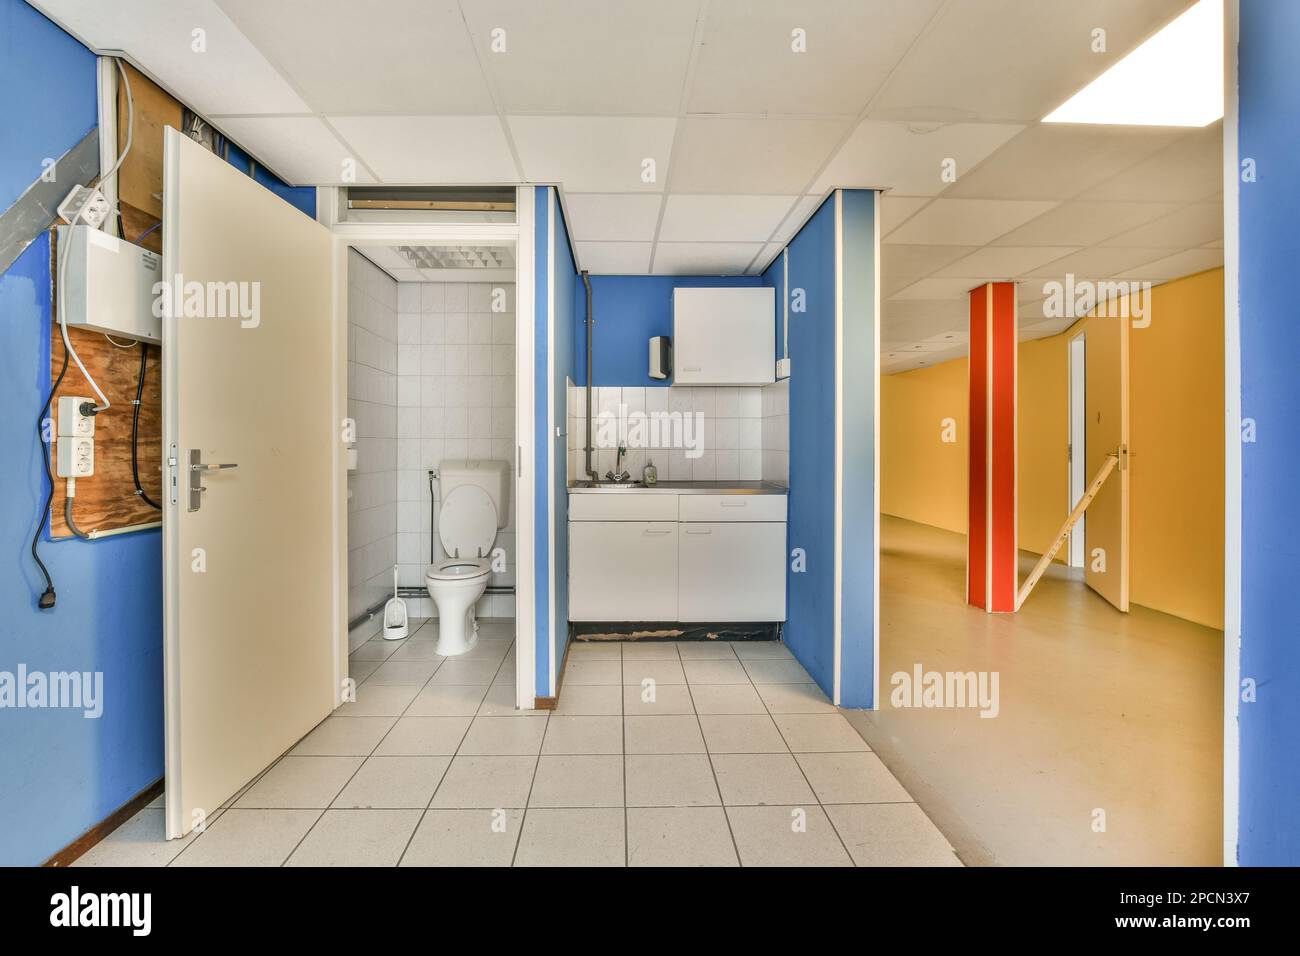 Ein leeres Bad mit blauen Wänden und weißen Fliesen auf dem Boden, von der Tür zur Toilette aus gesehen Stockfoto